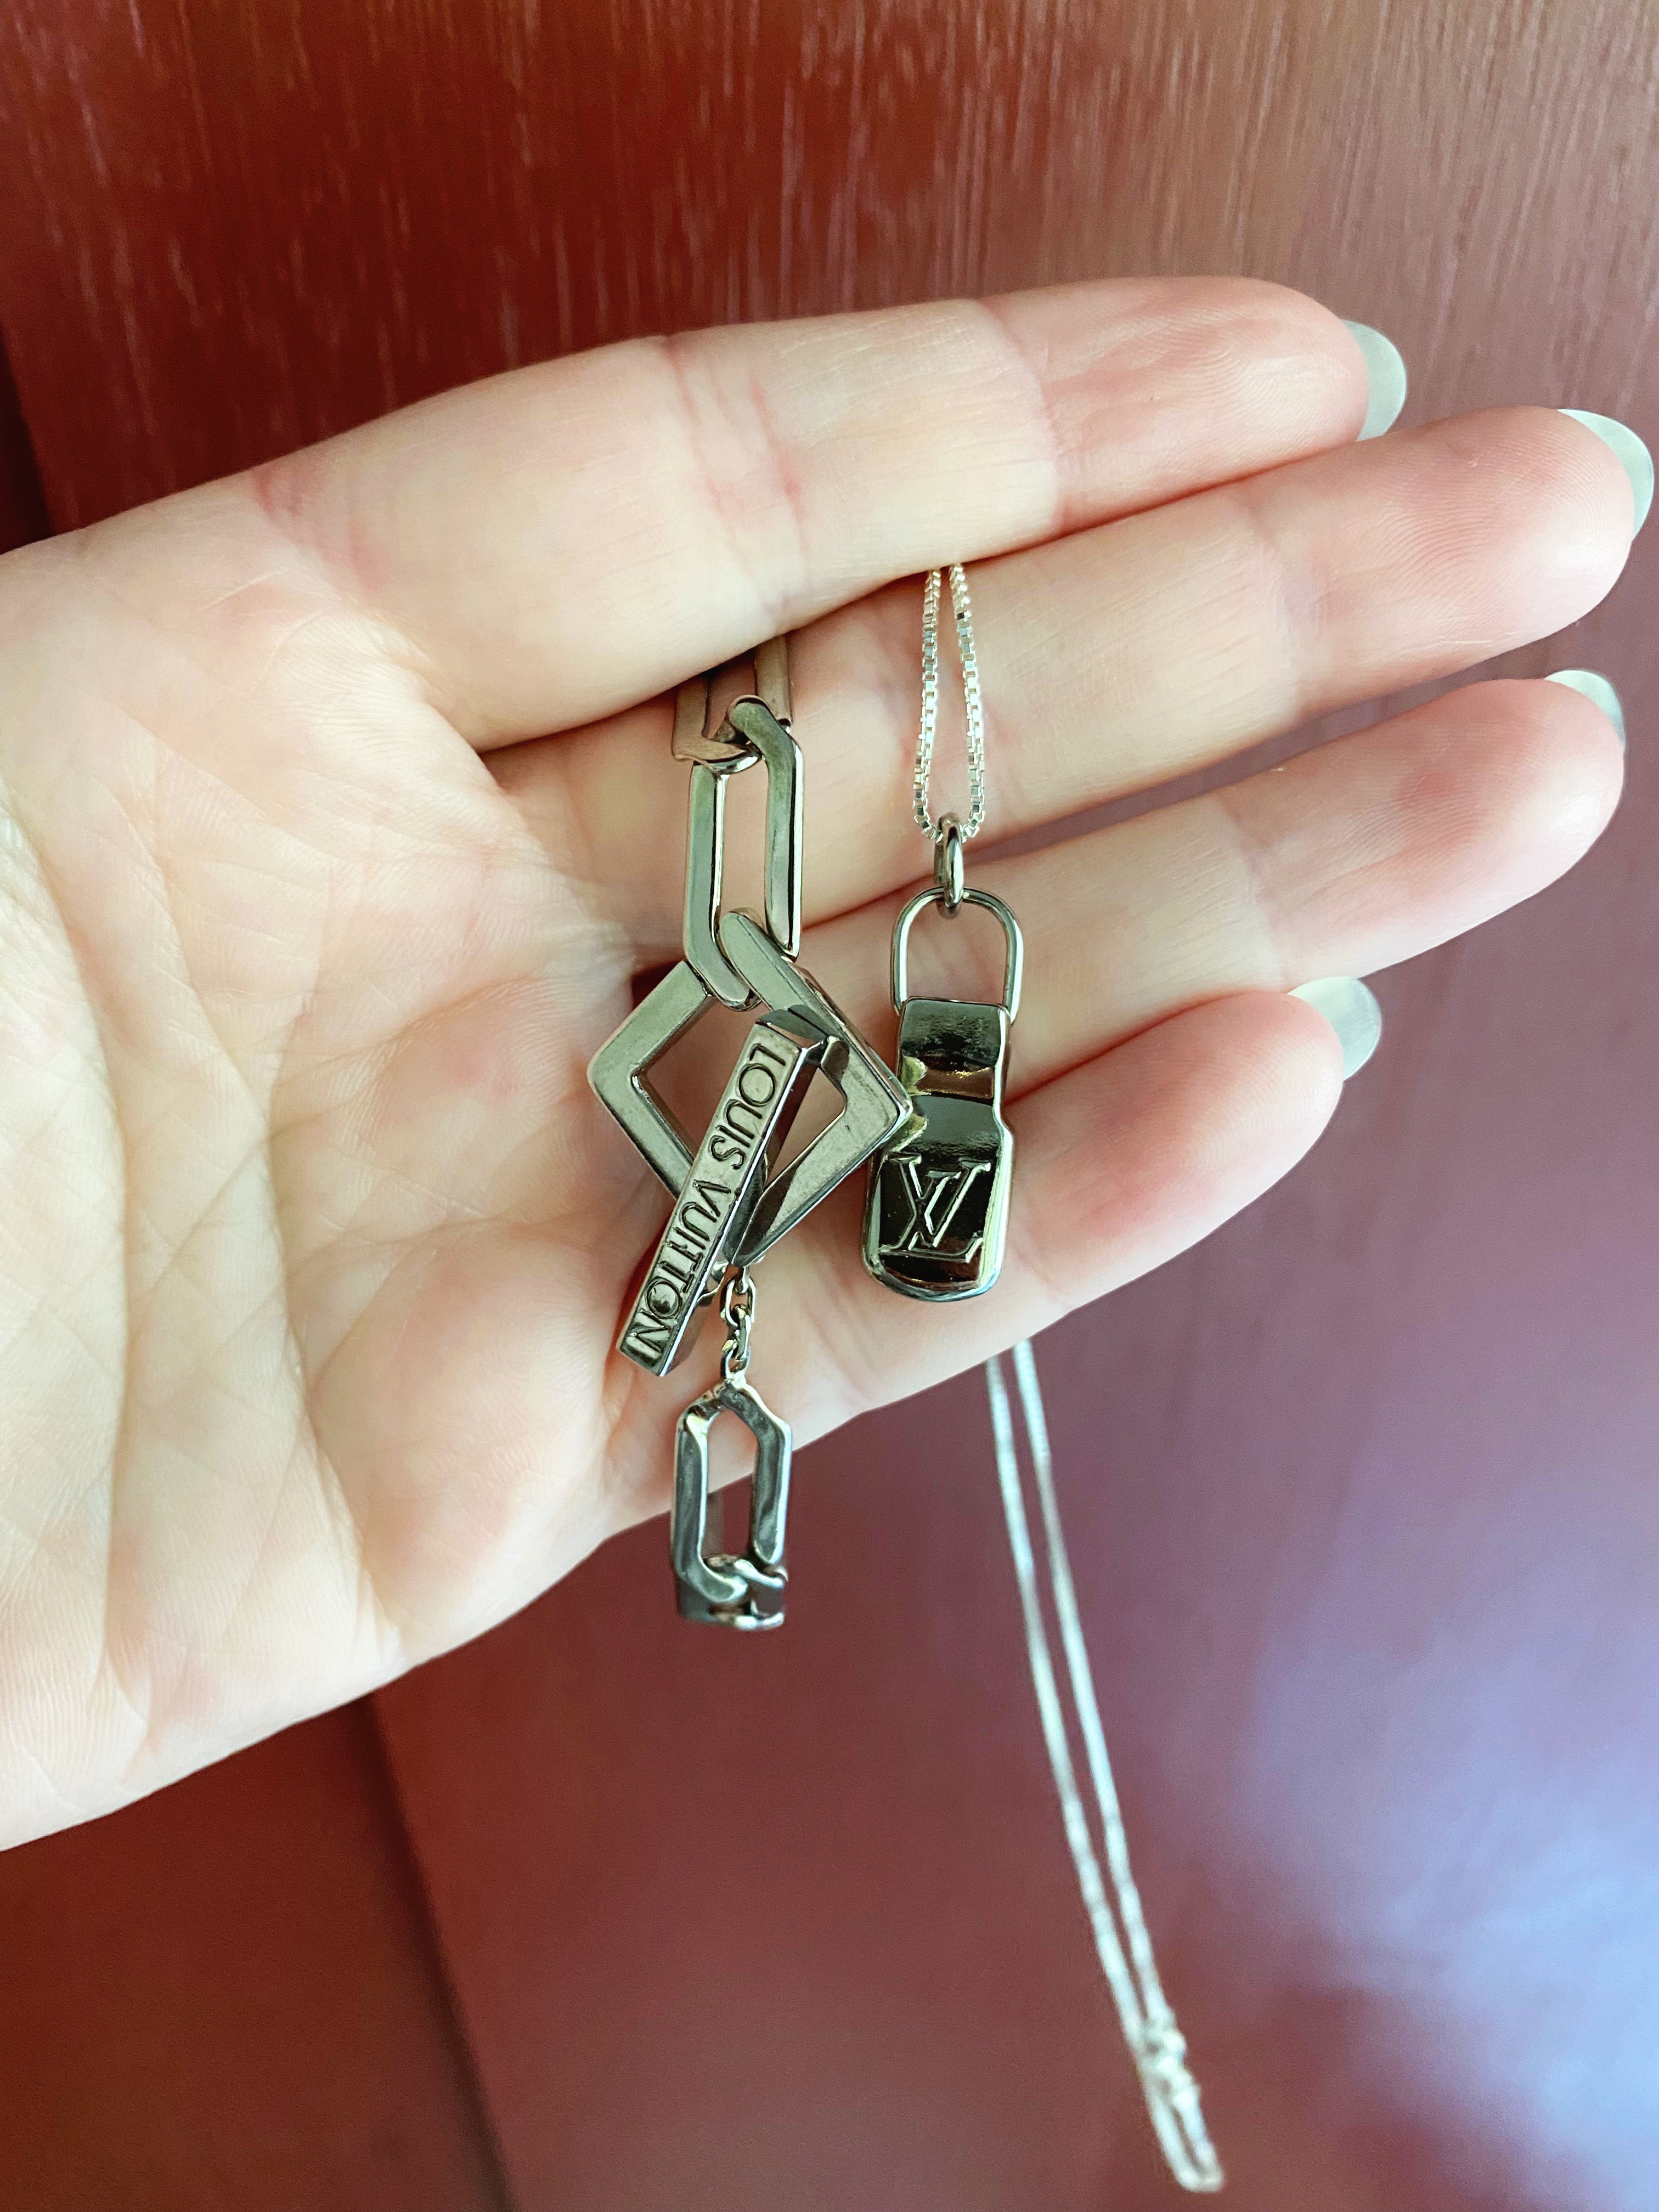 LV Zipper Necklace – Pickled Ginger